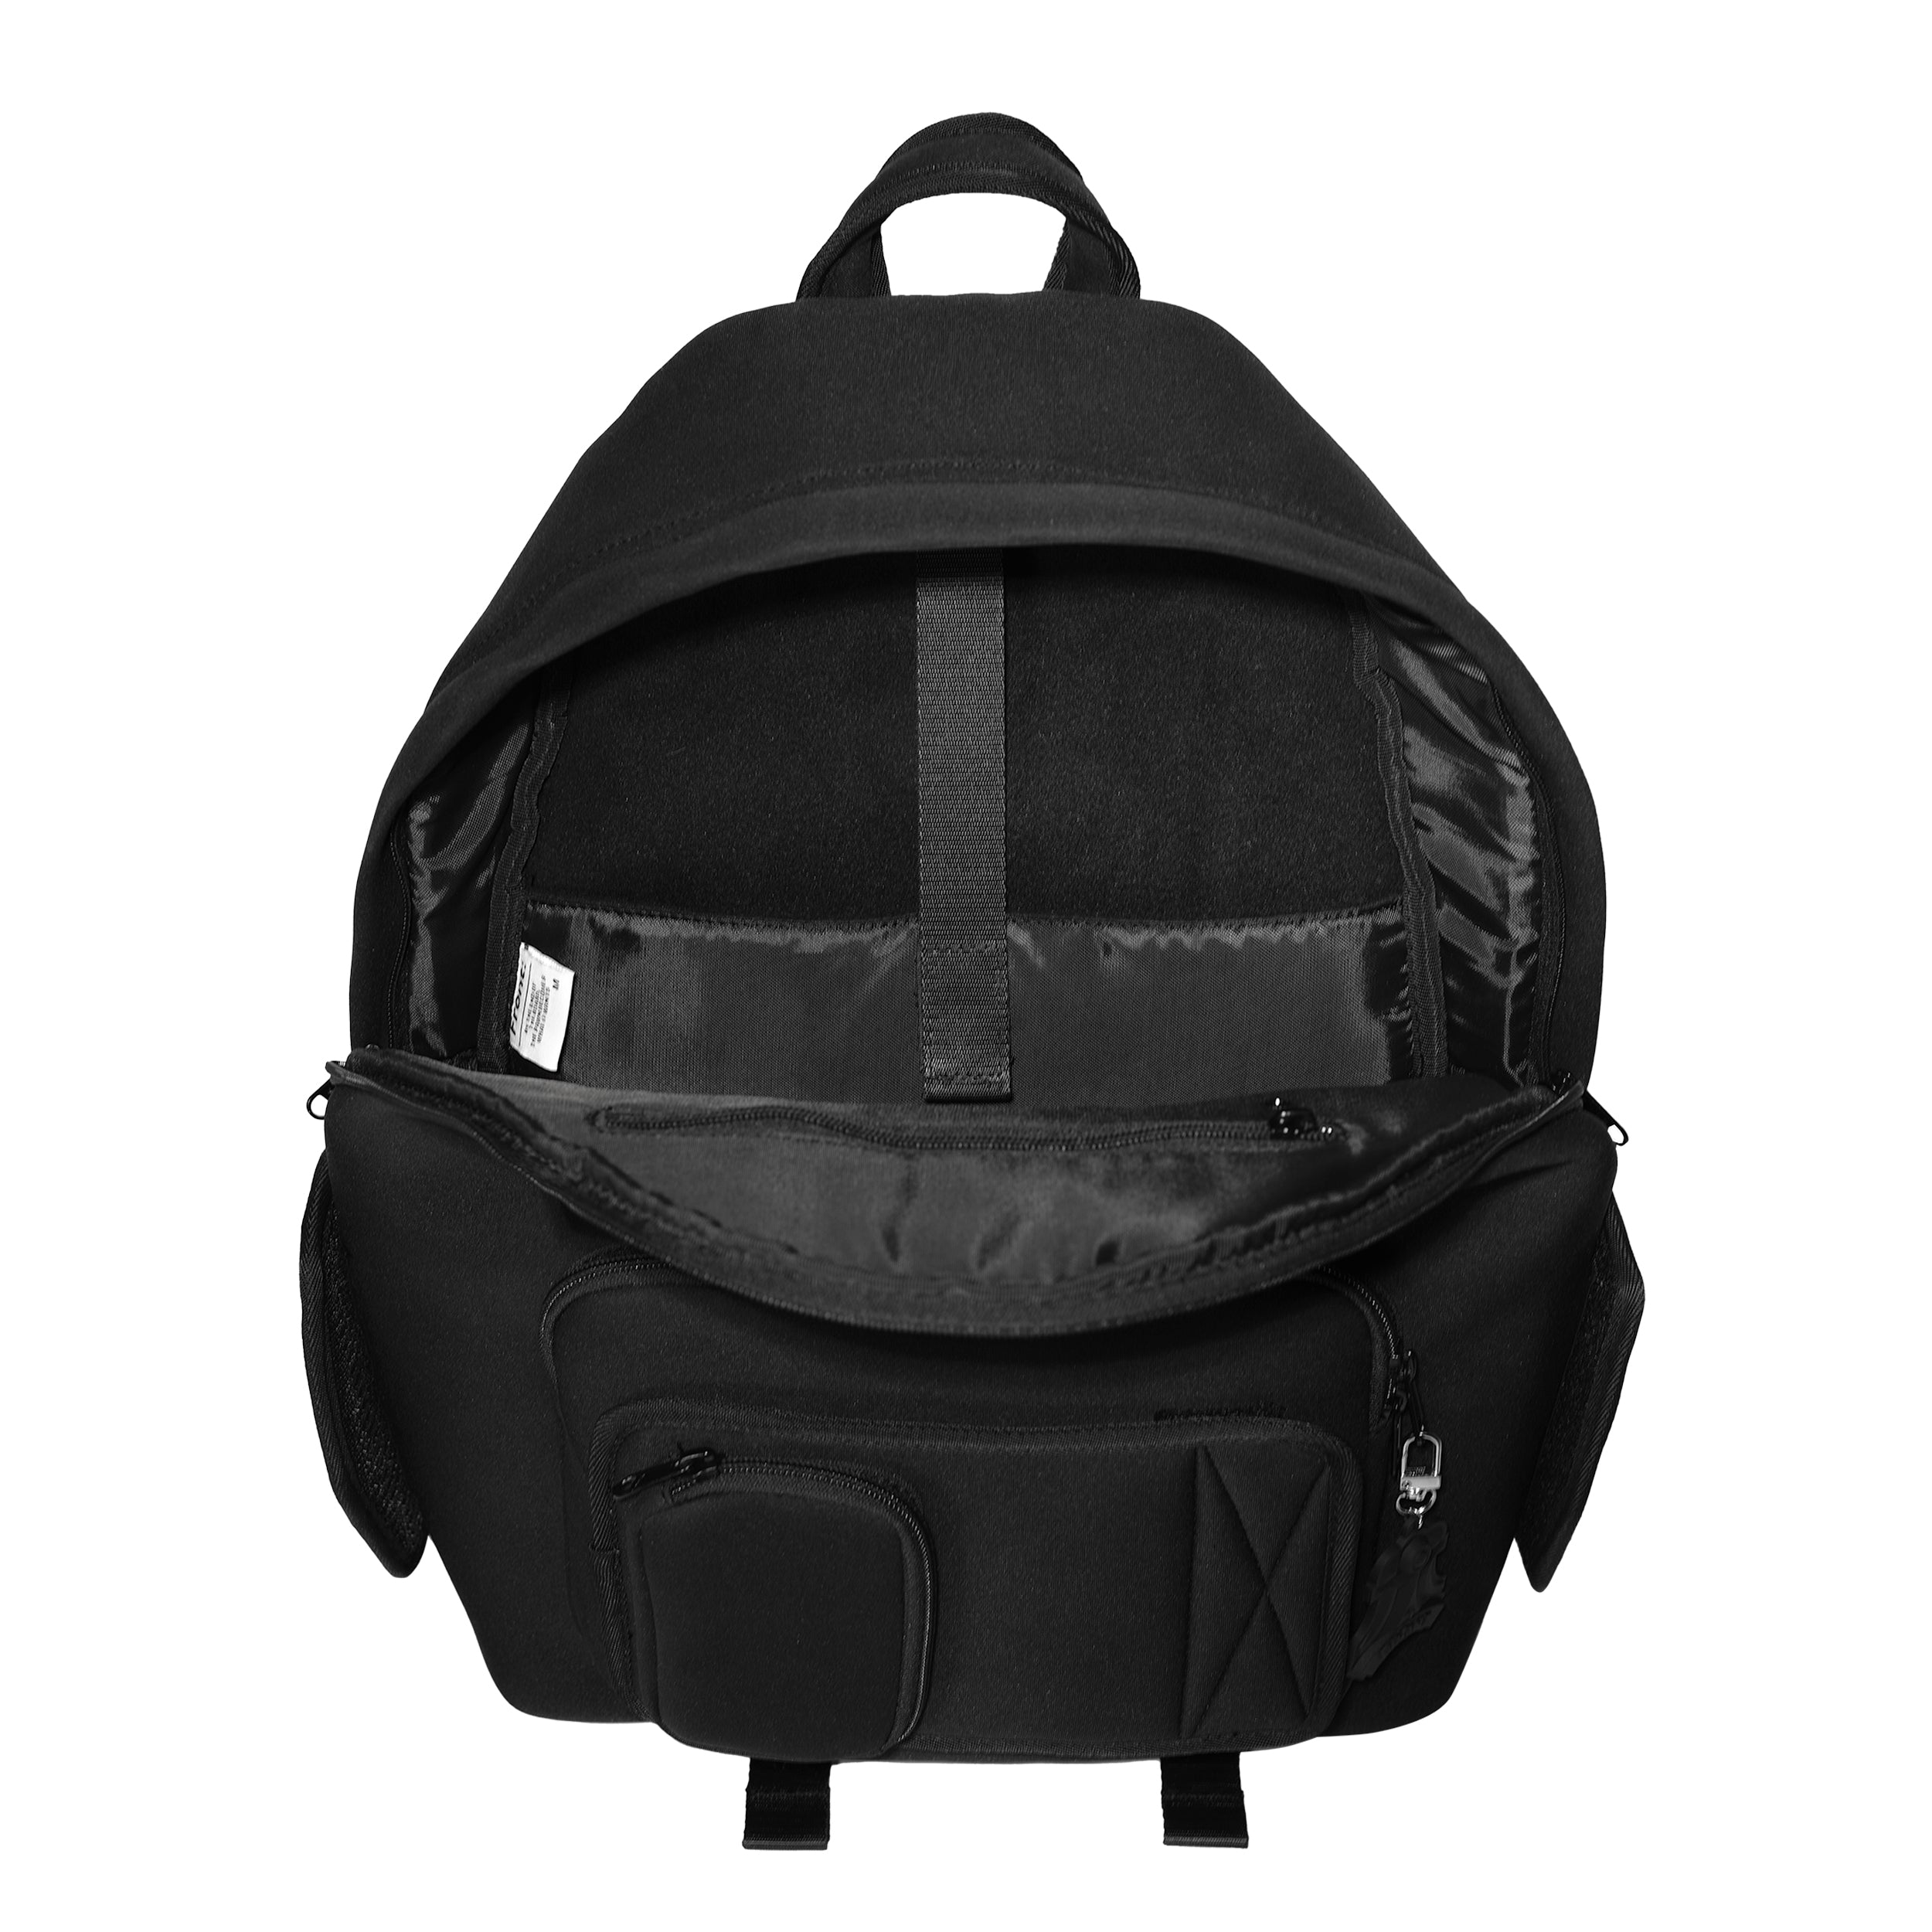 FRONT The Rook Backpack D421 Gen 3 - BLACK - M